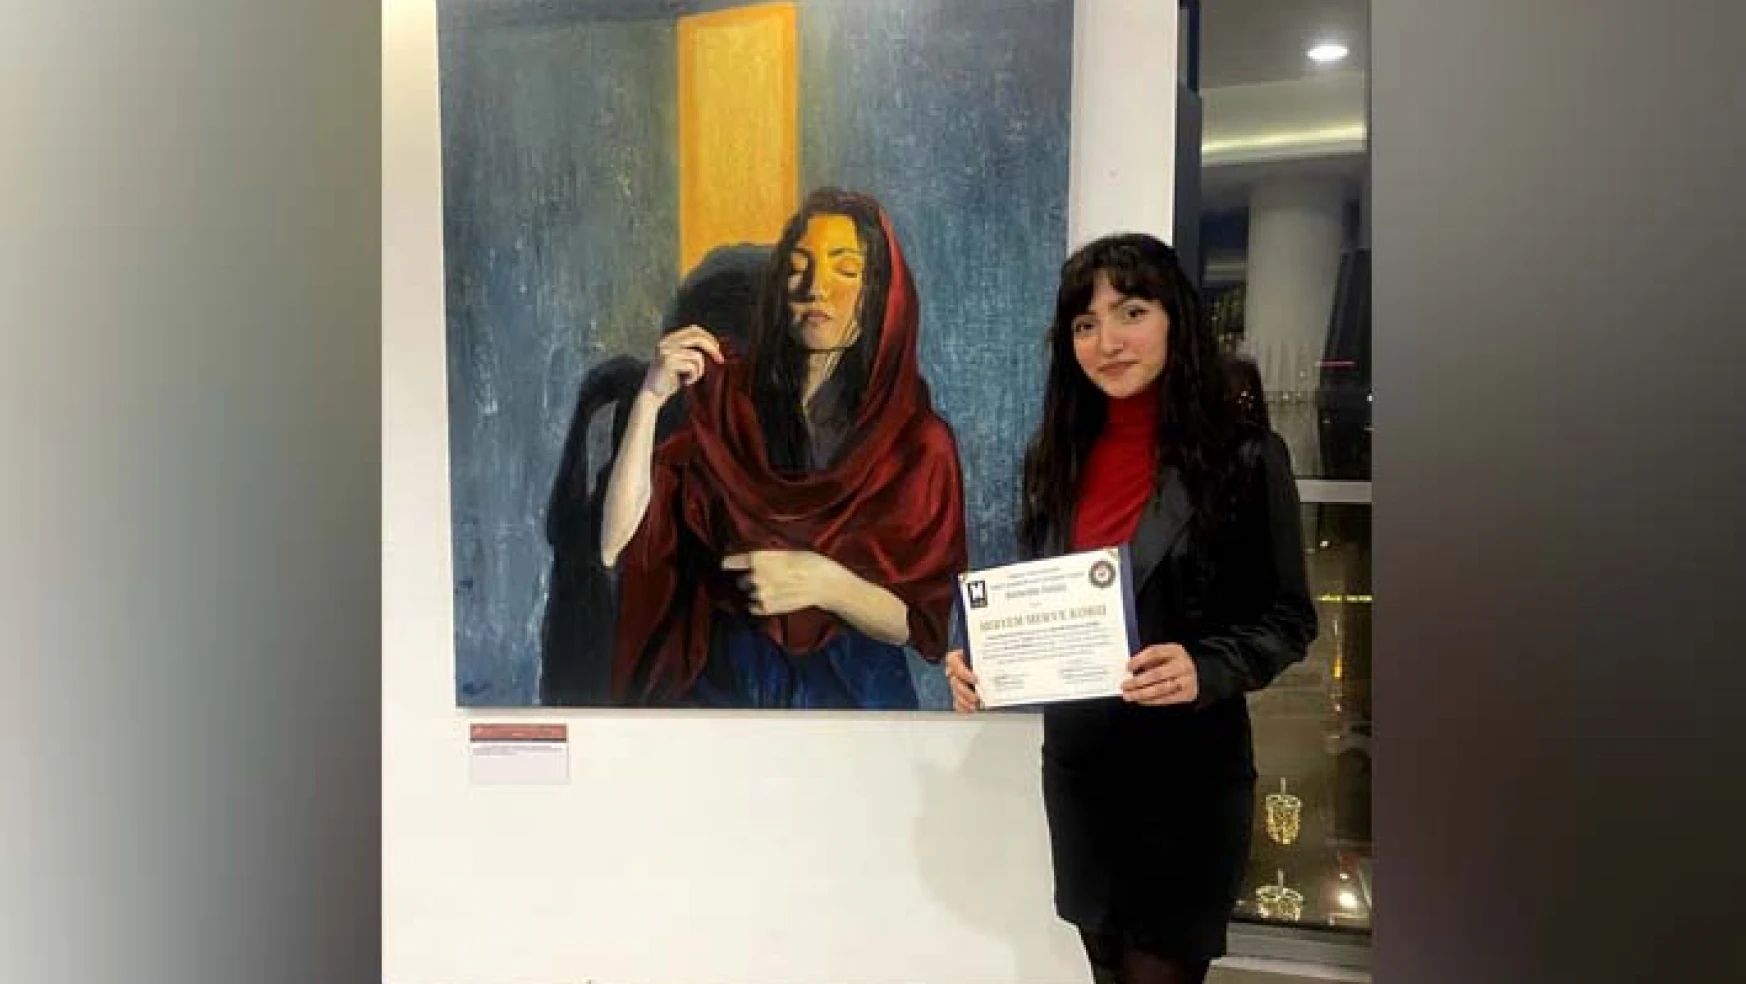 NEÜ Öğrencisi Koru'nun Eseri Resim Yarışmasında 1'inci Seçildi